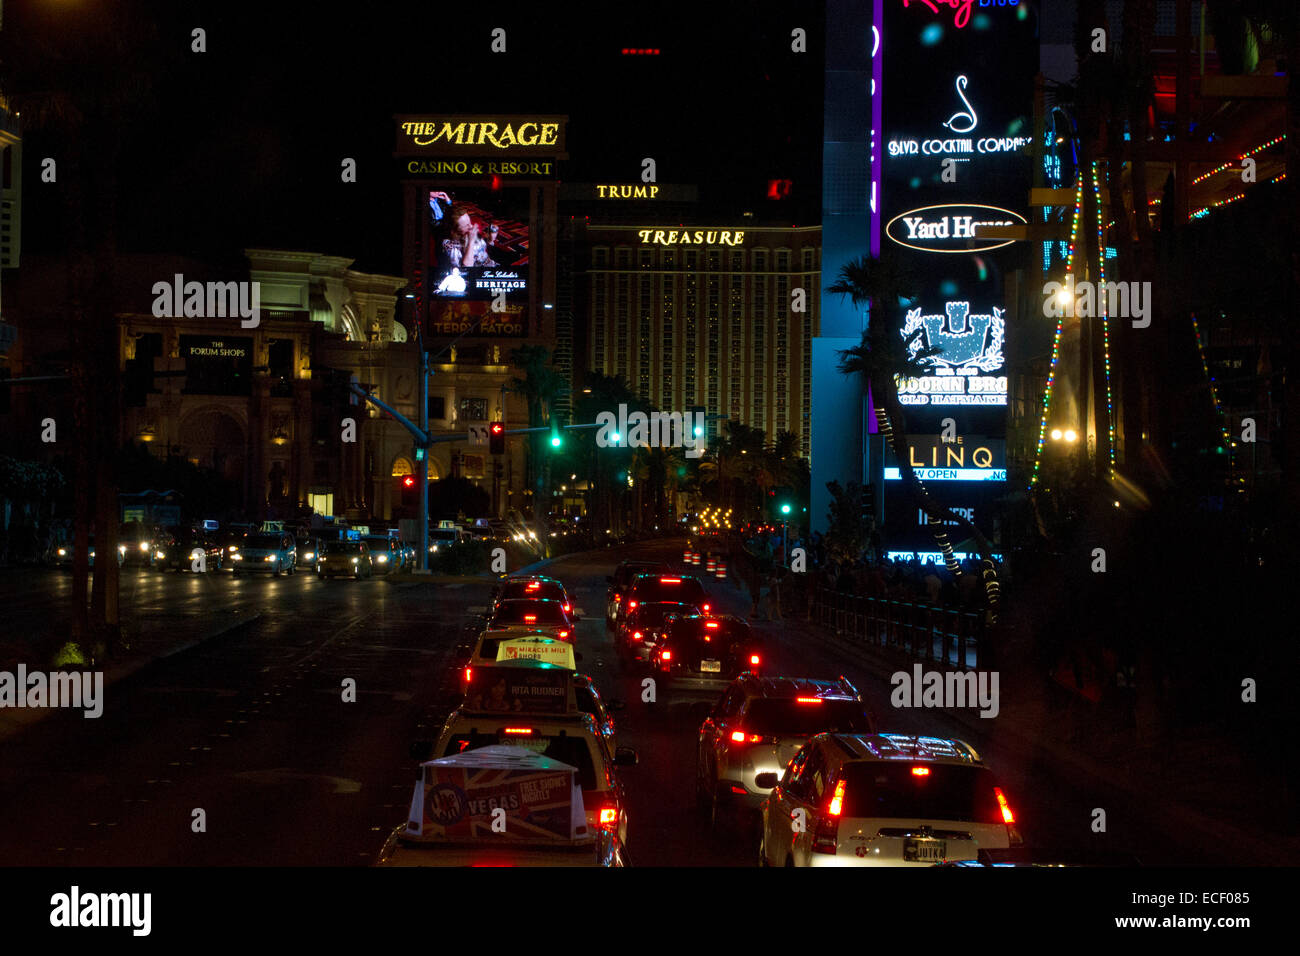 Escena nocturna del tráfico a lo largo de la Strip de Las Vegas y diversos hoteles y casinos: Mirage, Treasure Island, Trump & Street Signs Foto de stock